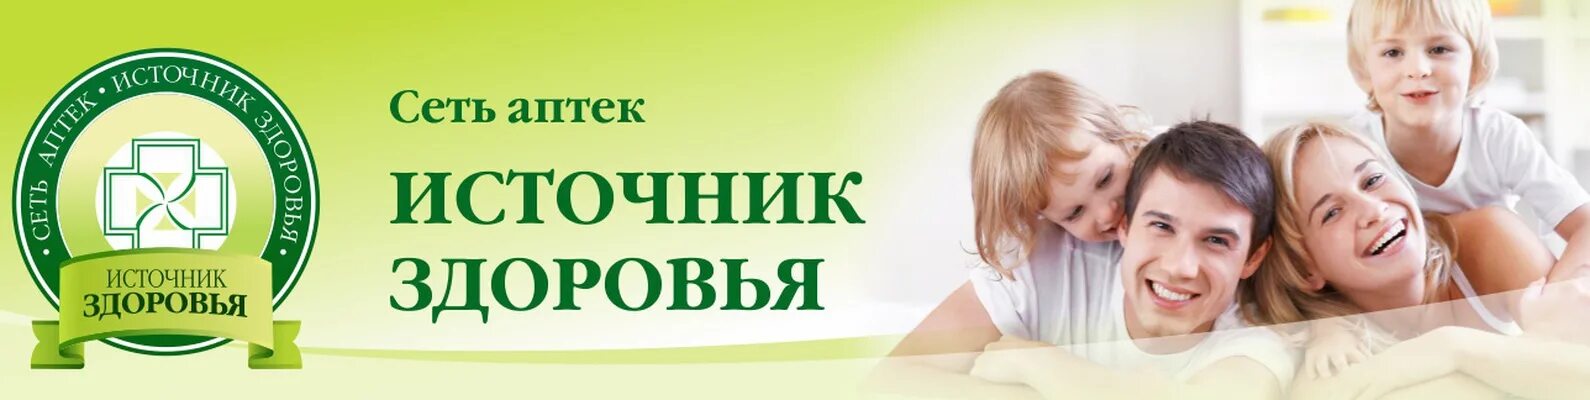 Аптека источник здоровья. Аптеки источник здоровья Екатеринбург. Источник здоровья логотип. Здоровье источник здоровья. Источник здоровья сайт